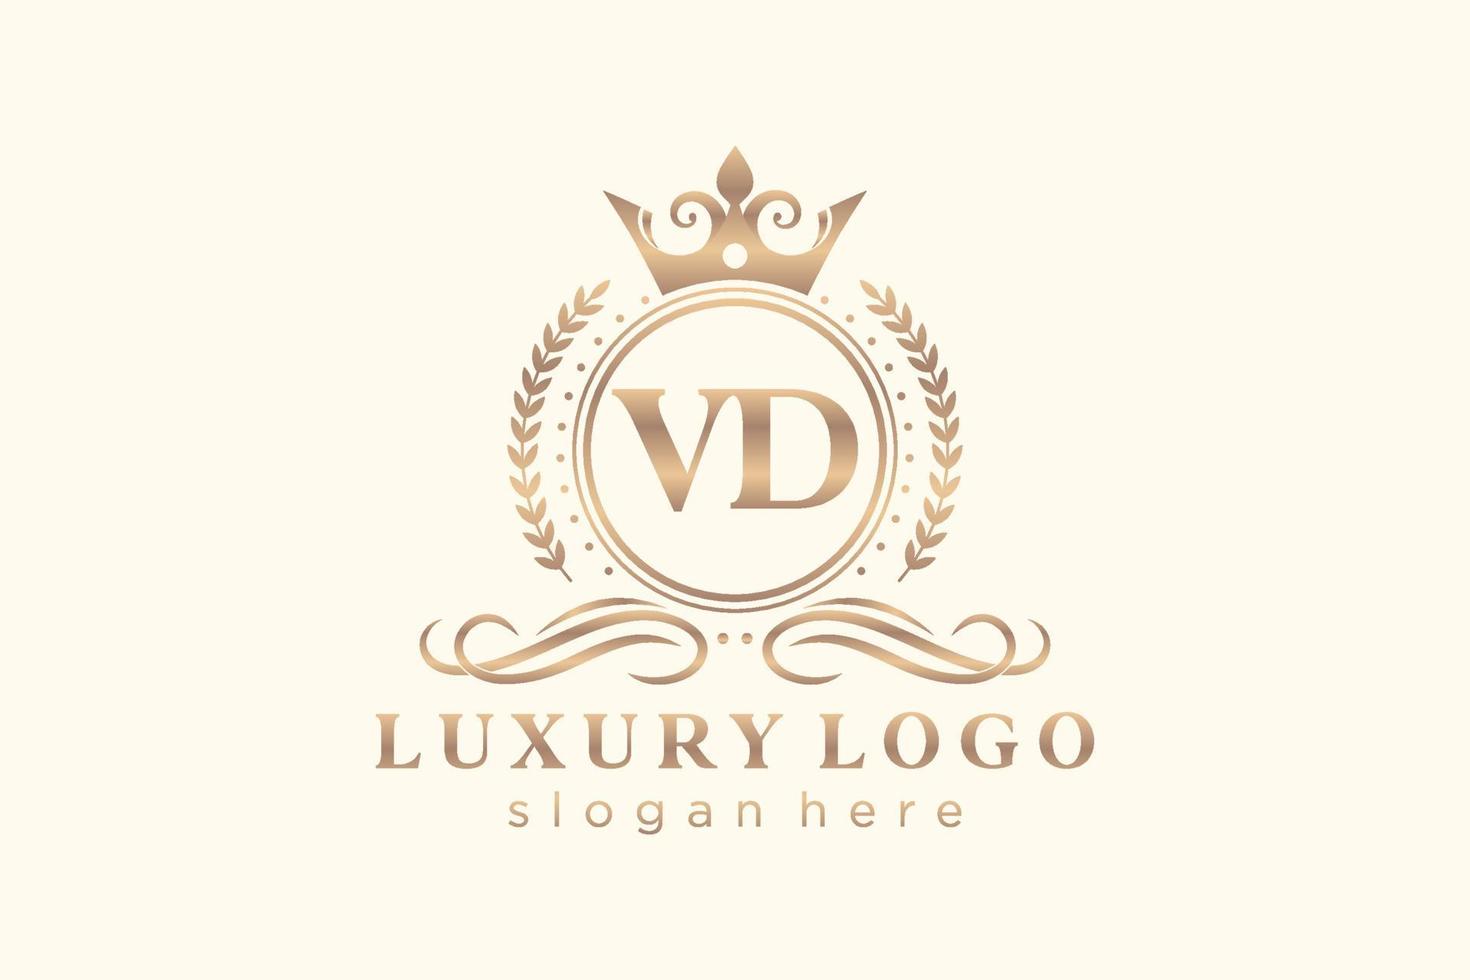 plantilla de logotipo de lujo real de letra vd inicial en arte vectorial para restaurante, realeza, boutique, cafetería, hotel, heráldica, joyería, moda y otras ilustraciones vectoriales. vector